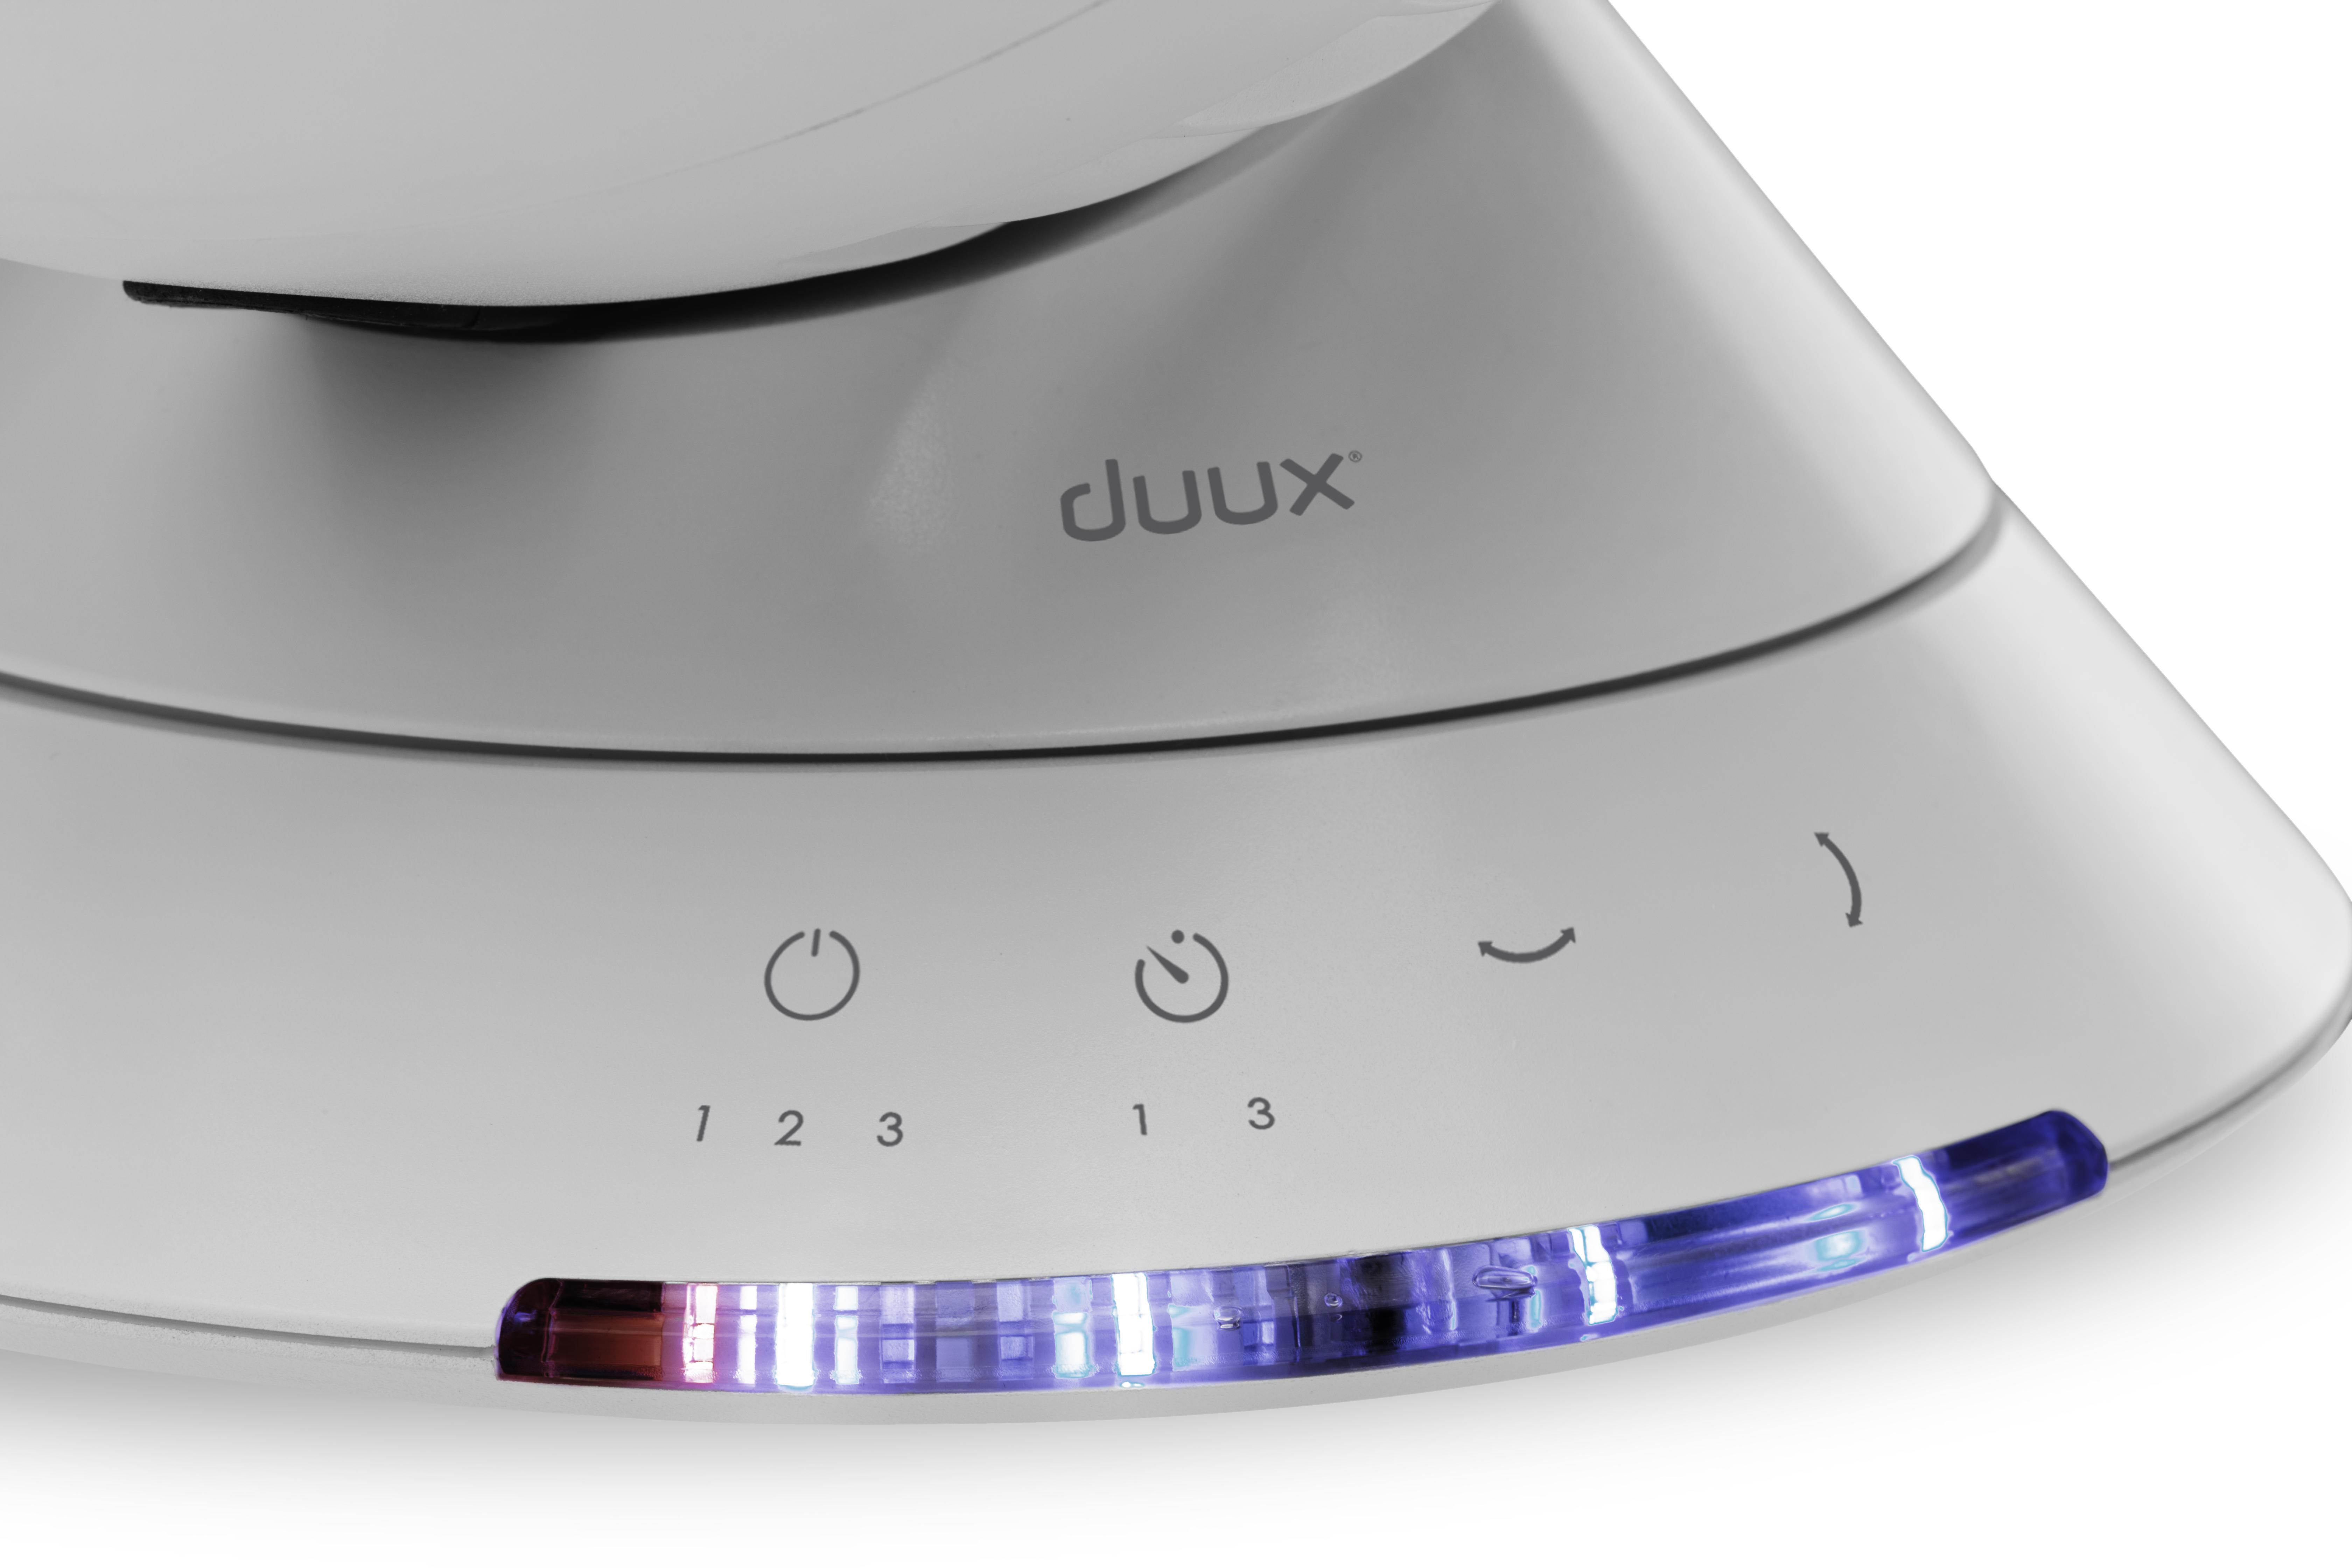 DUUX DXCF08 Tischventilator Watt) Fan Globe Table (23 Weiß